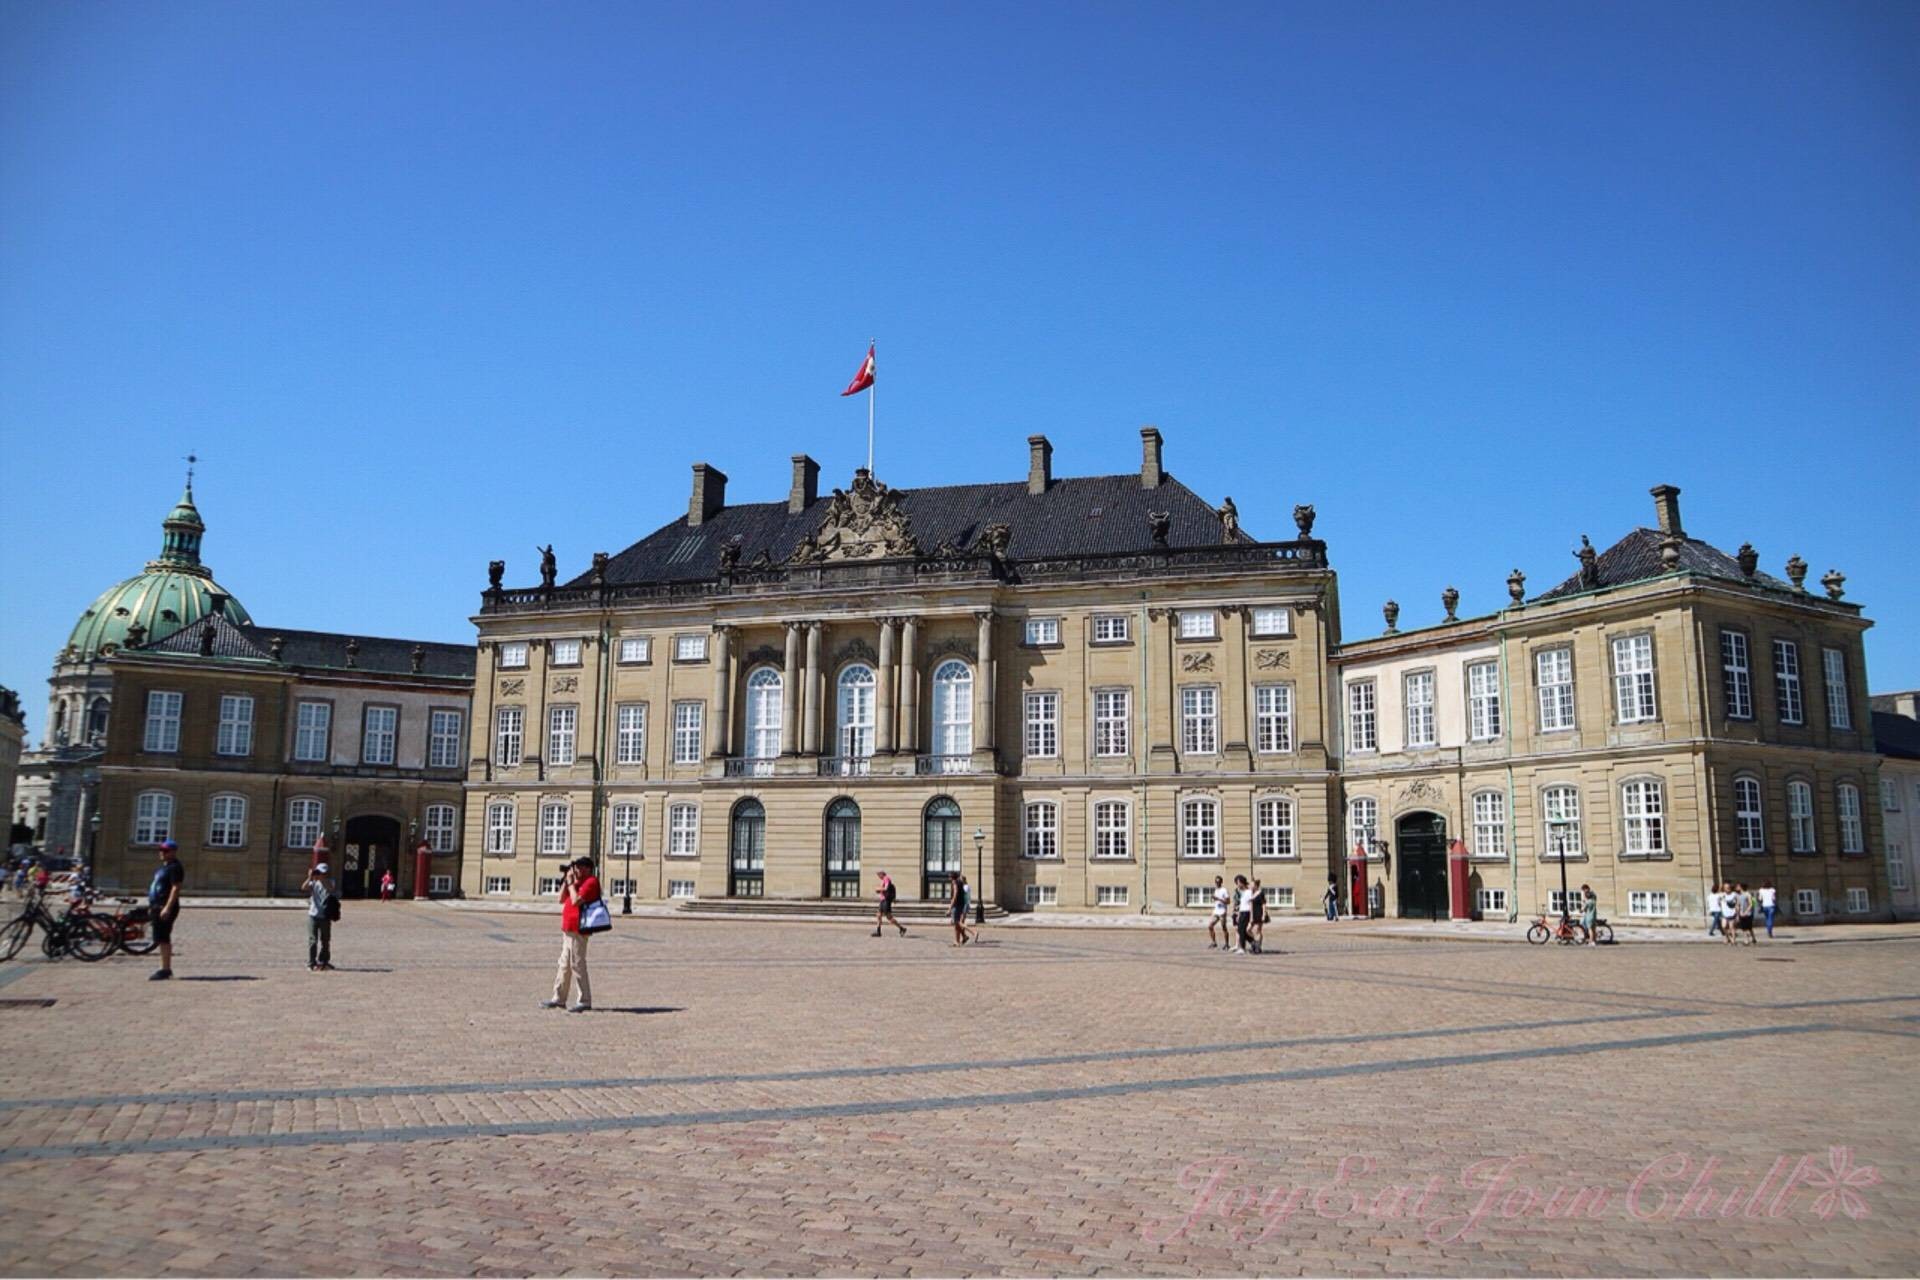 รีวิว Amalienborg Palace - พระราชวังอมาเลียนบอร์ก สถานที่ประทับในช่วงฤดูหนาวของราชวงศ์เดนมาร์ก - Wongnai